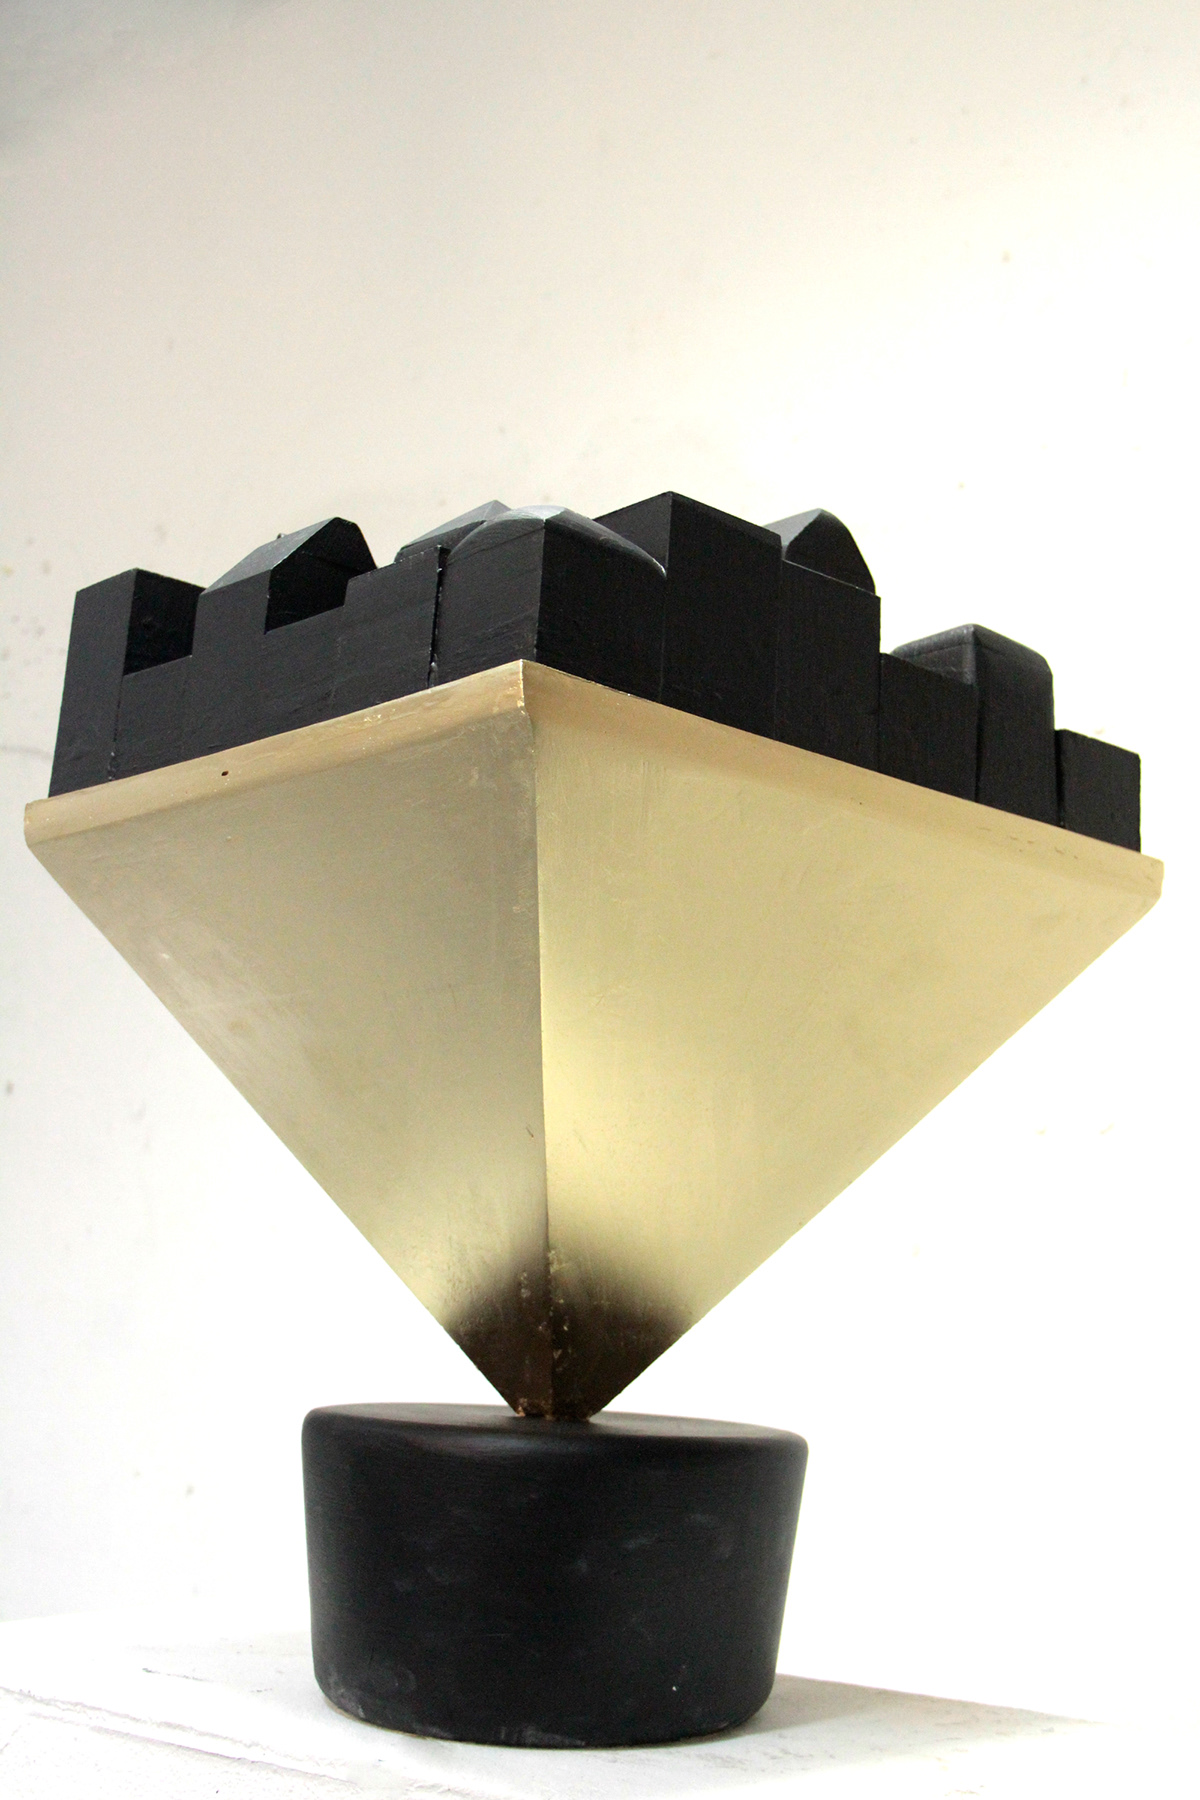 3D object design gold pyramid black sculpture plasture Paris louvre monument golden